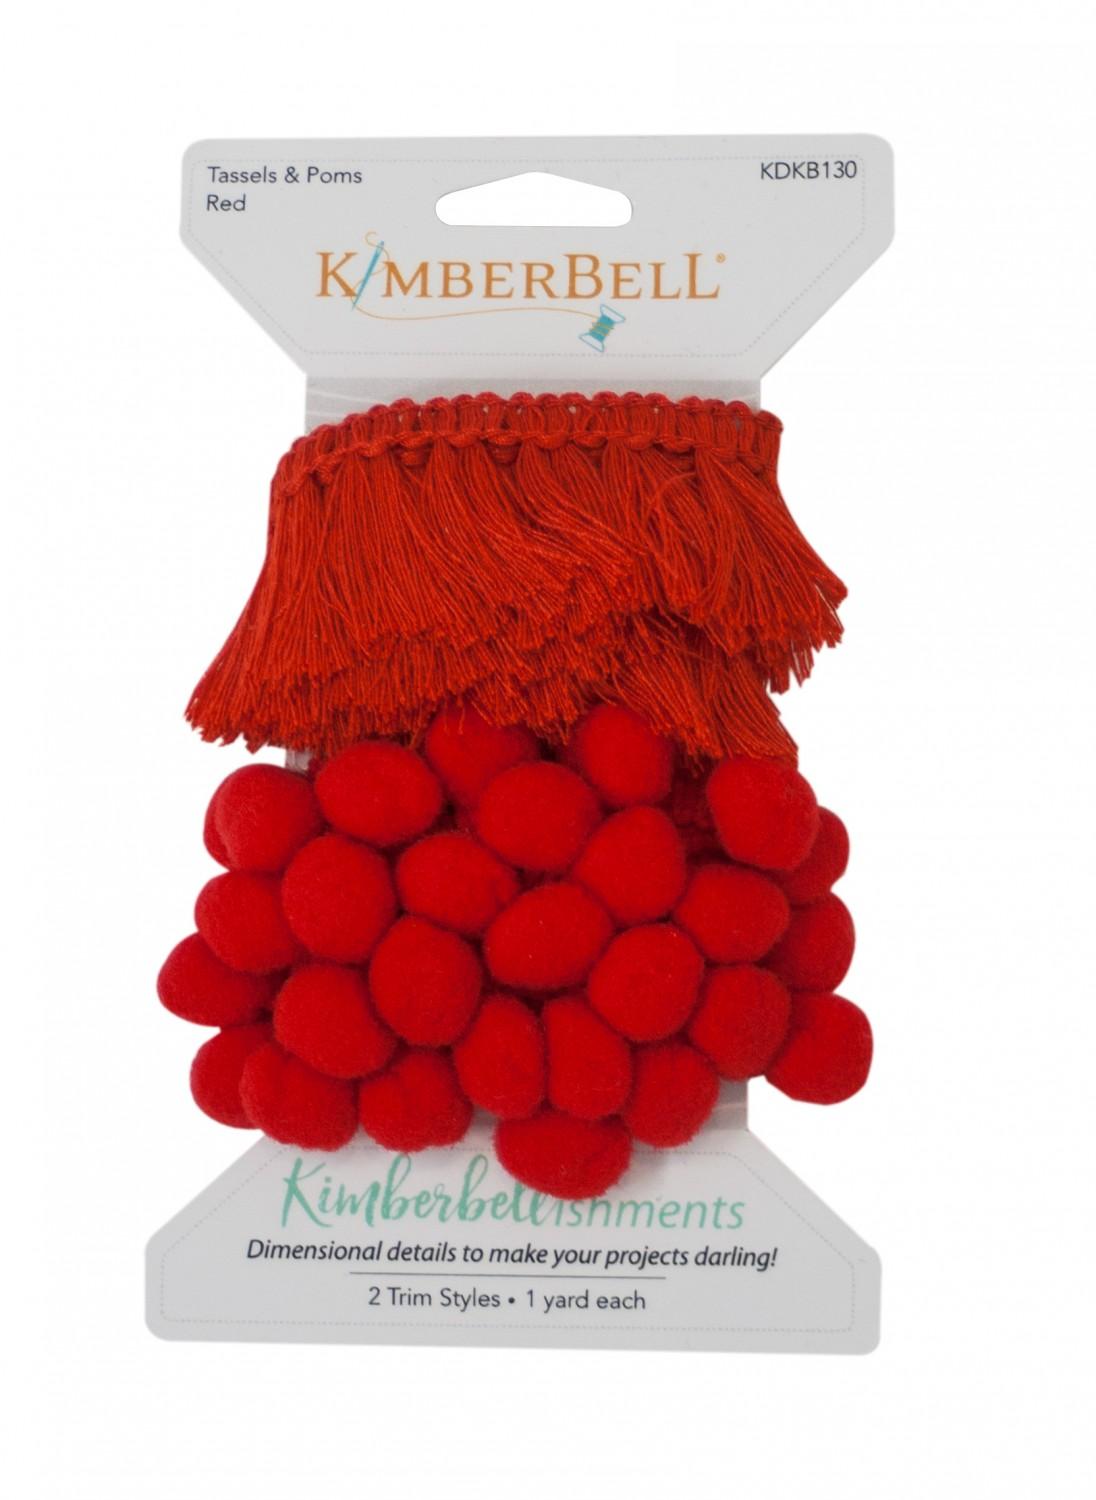 Kimberbellishments Tassels & Poms Trim Red # KDKB130 - SPECIAL ORDER